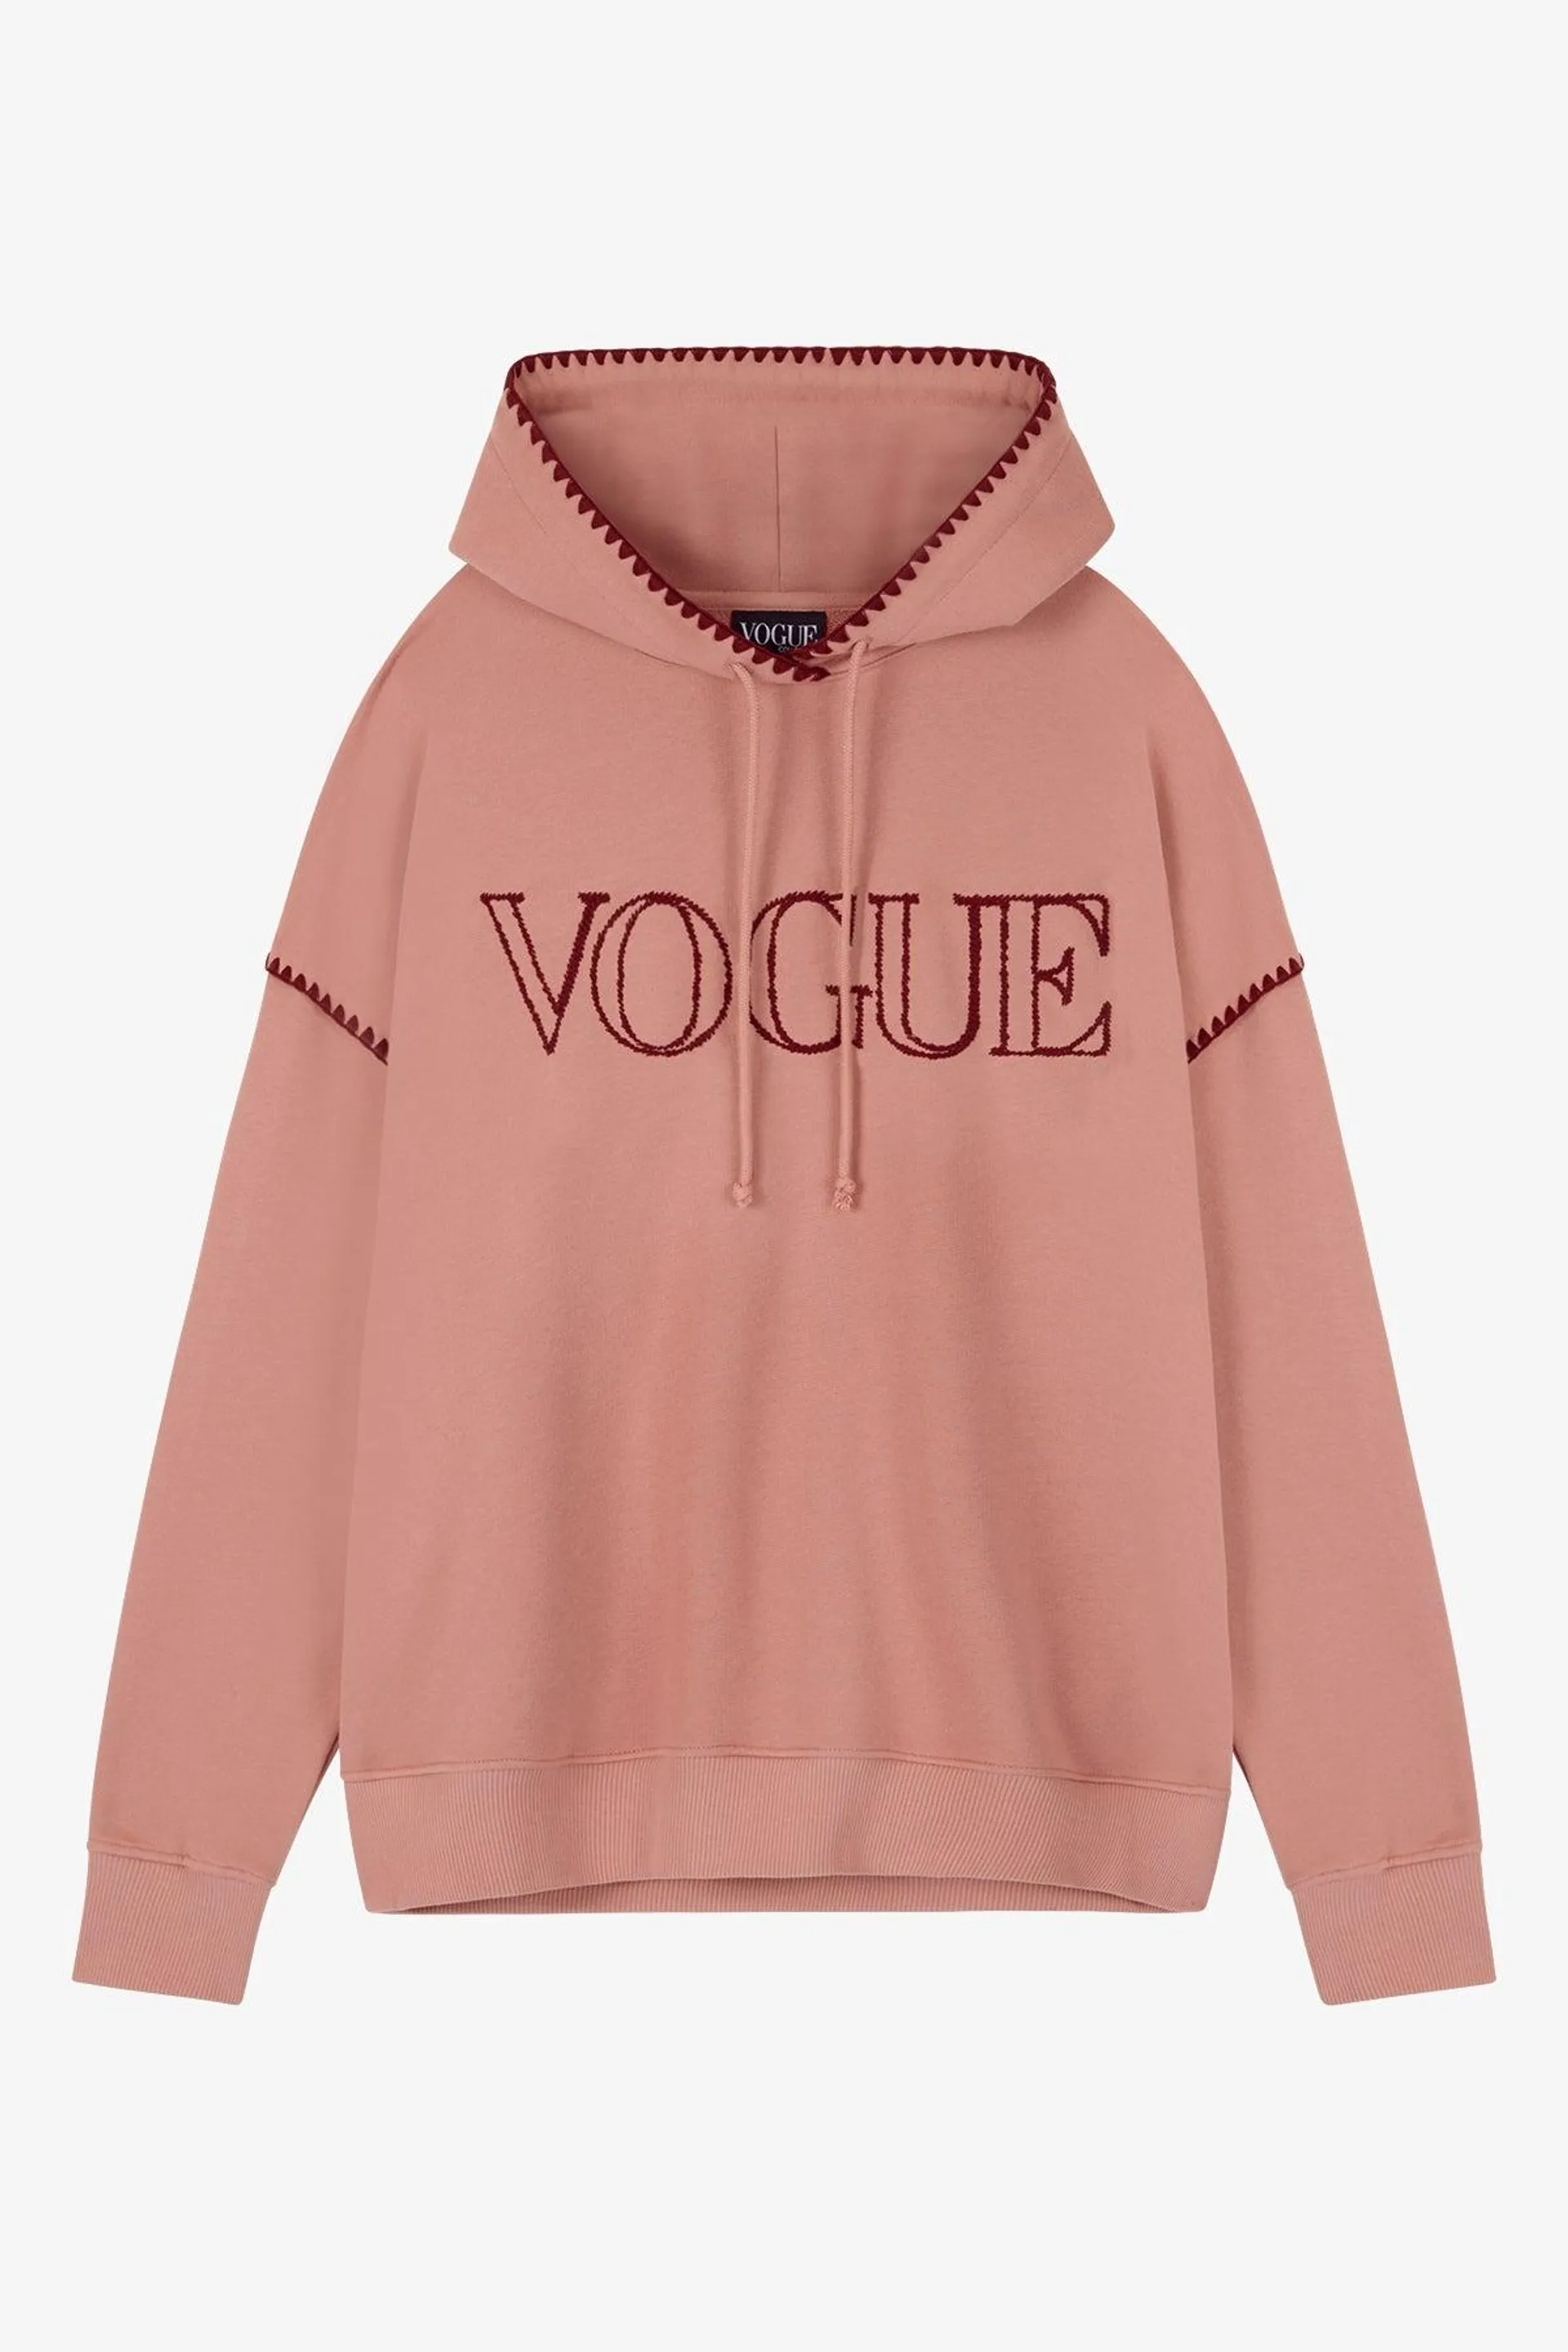 Sudadera hoodie VOGUE oversize rosa antiguo con logo bordado